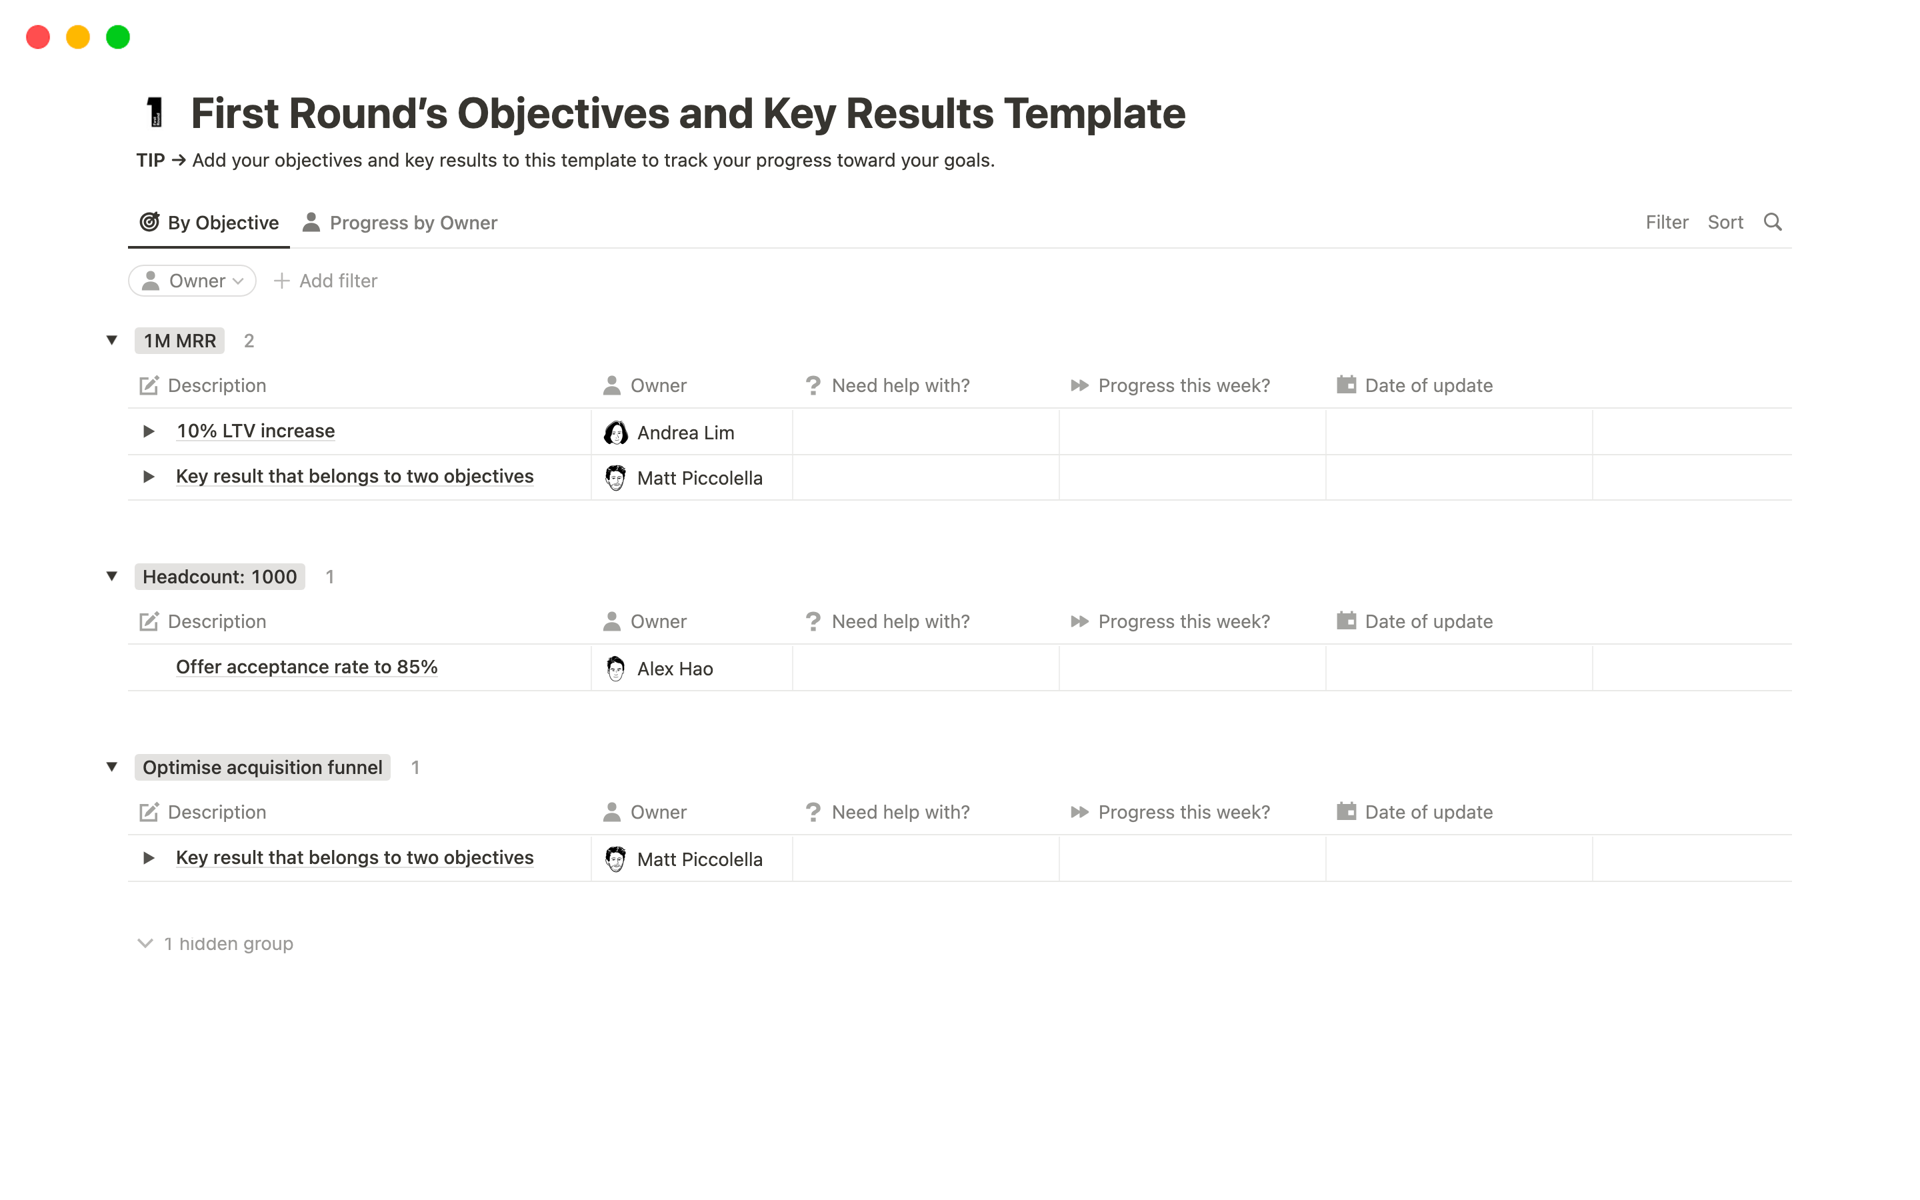 Vista previa de una plantilla para Objectives and Key Results